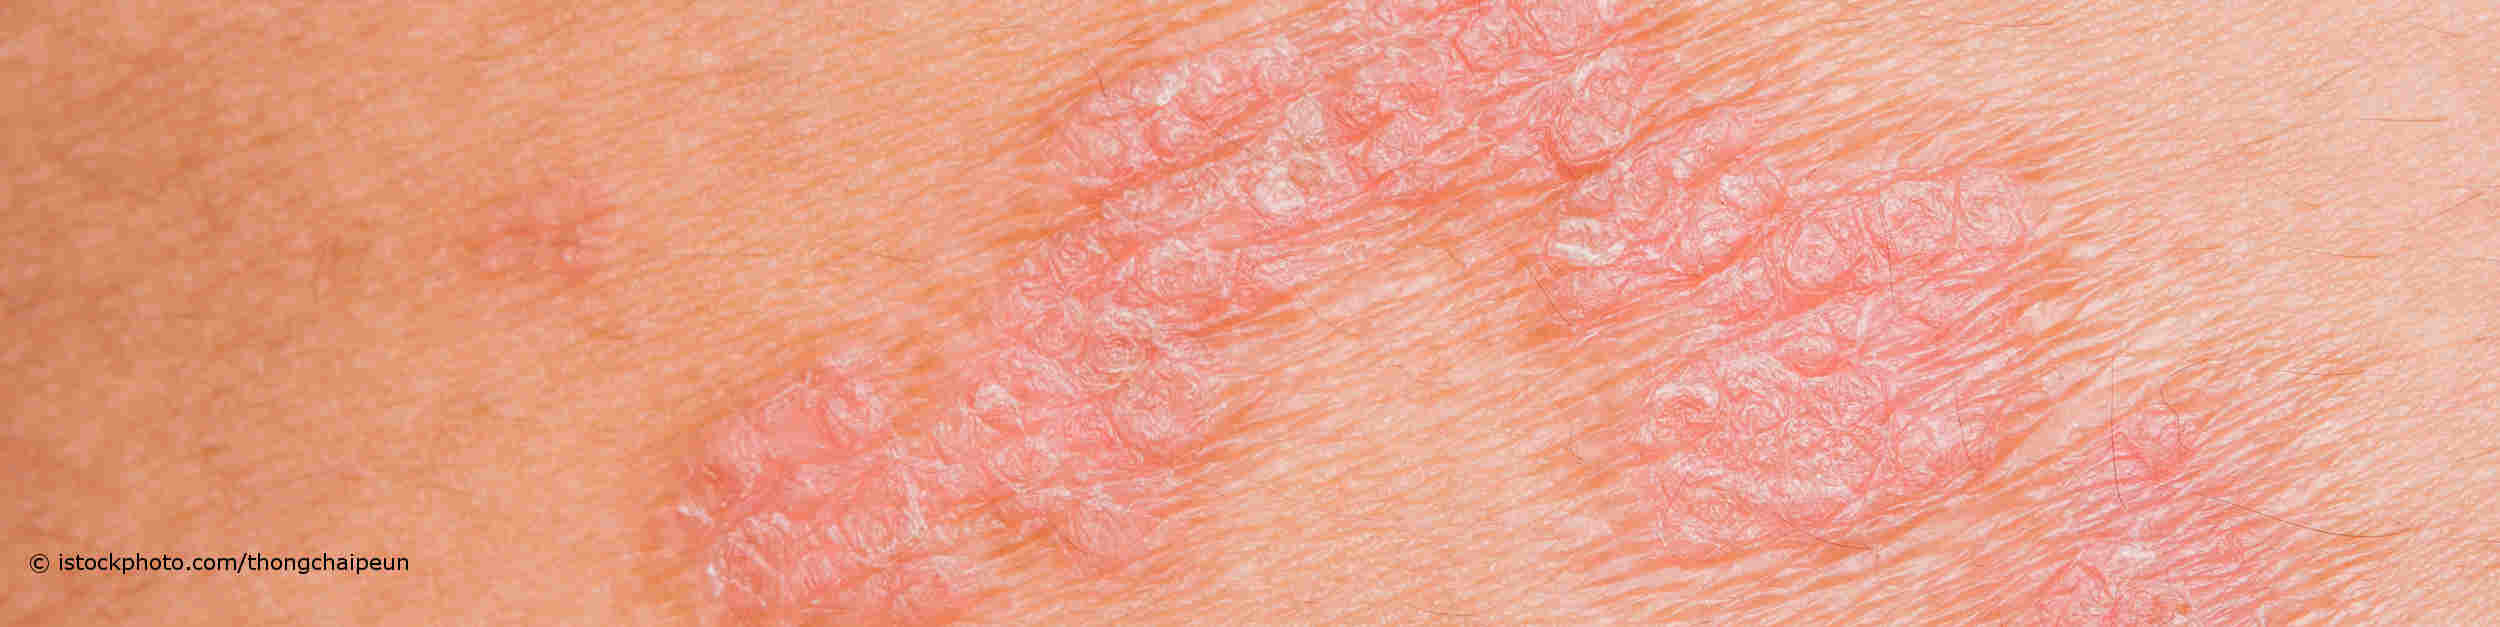 Psoriasis, auch Schuppenflechte genannt, führt zu einer roten und schuppigen Hautentzündung.